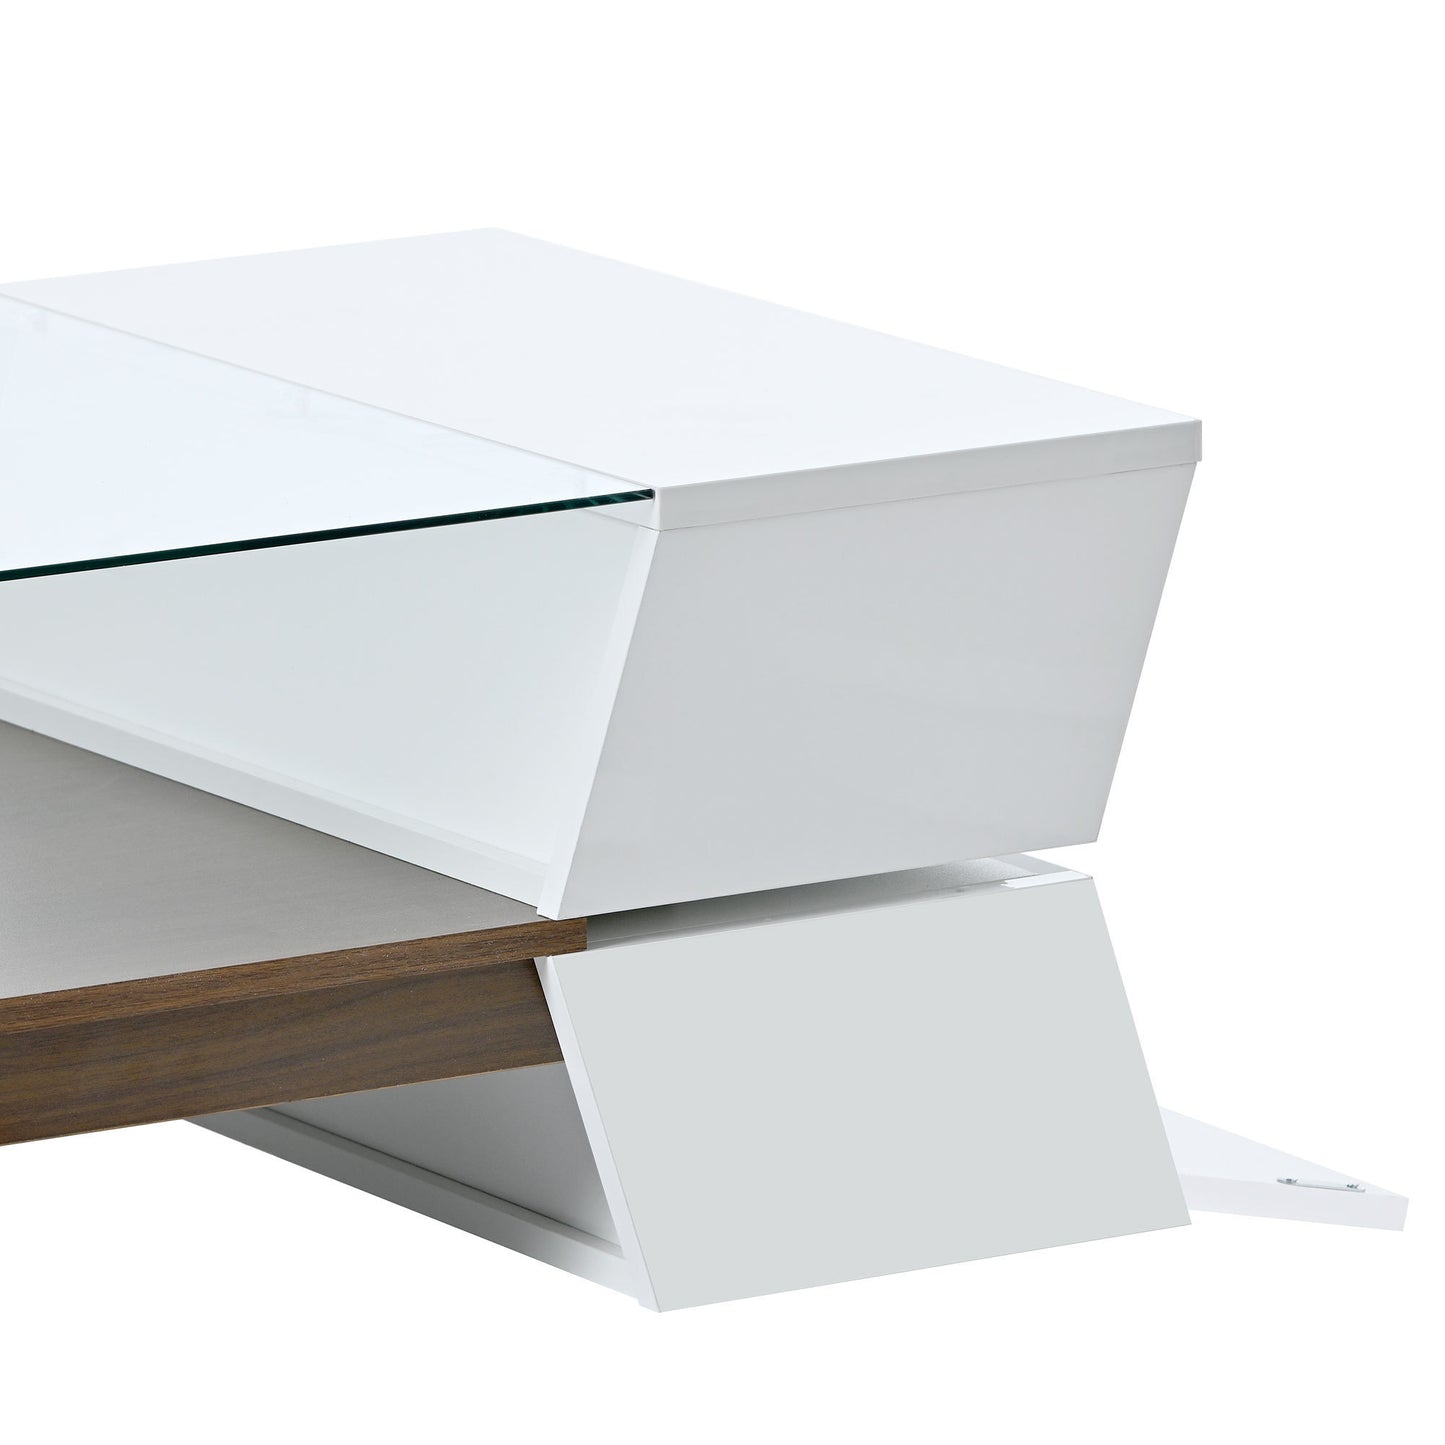 Modernist 2-Tier Center Table for Living Room- White